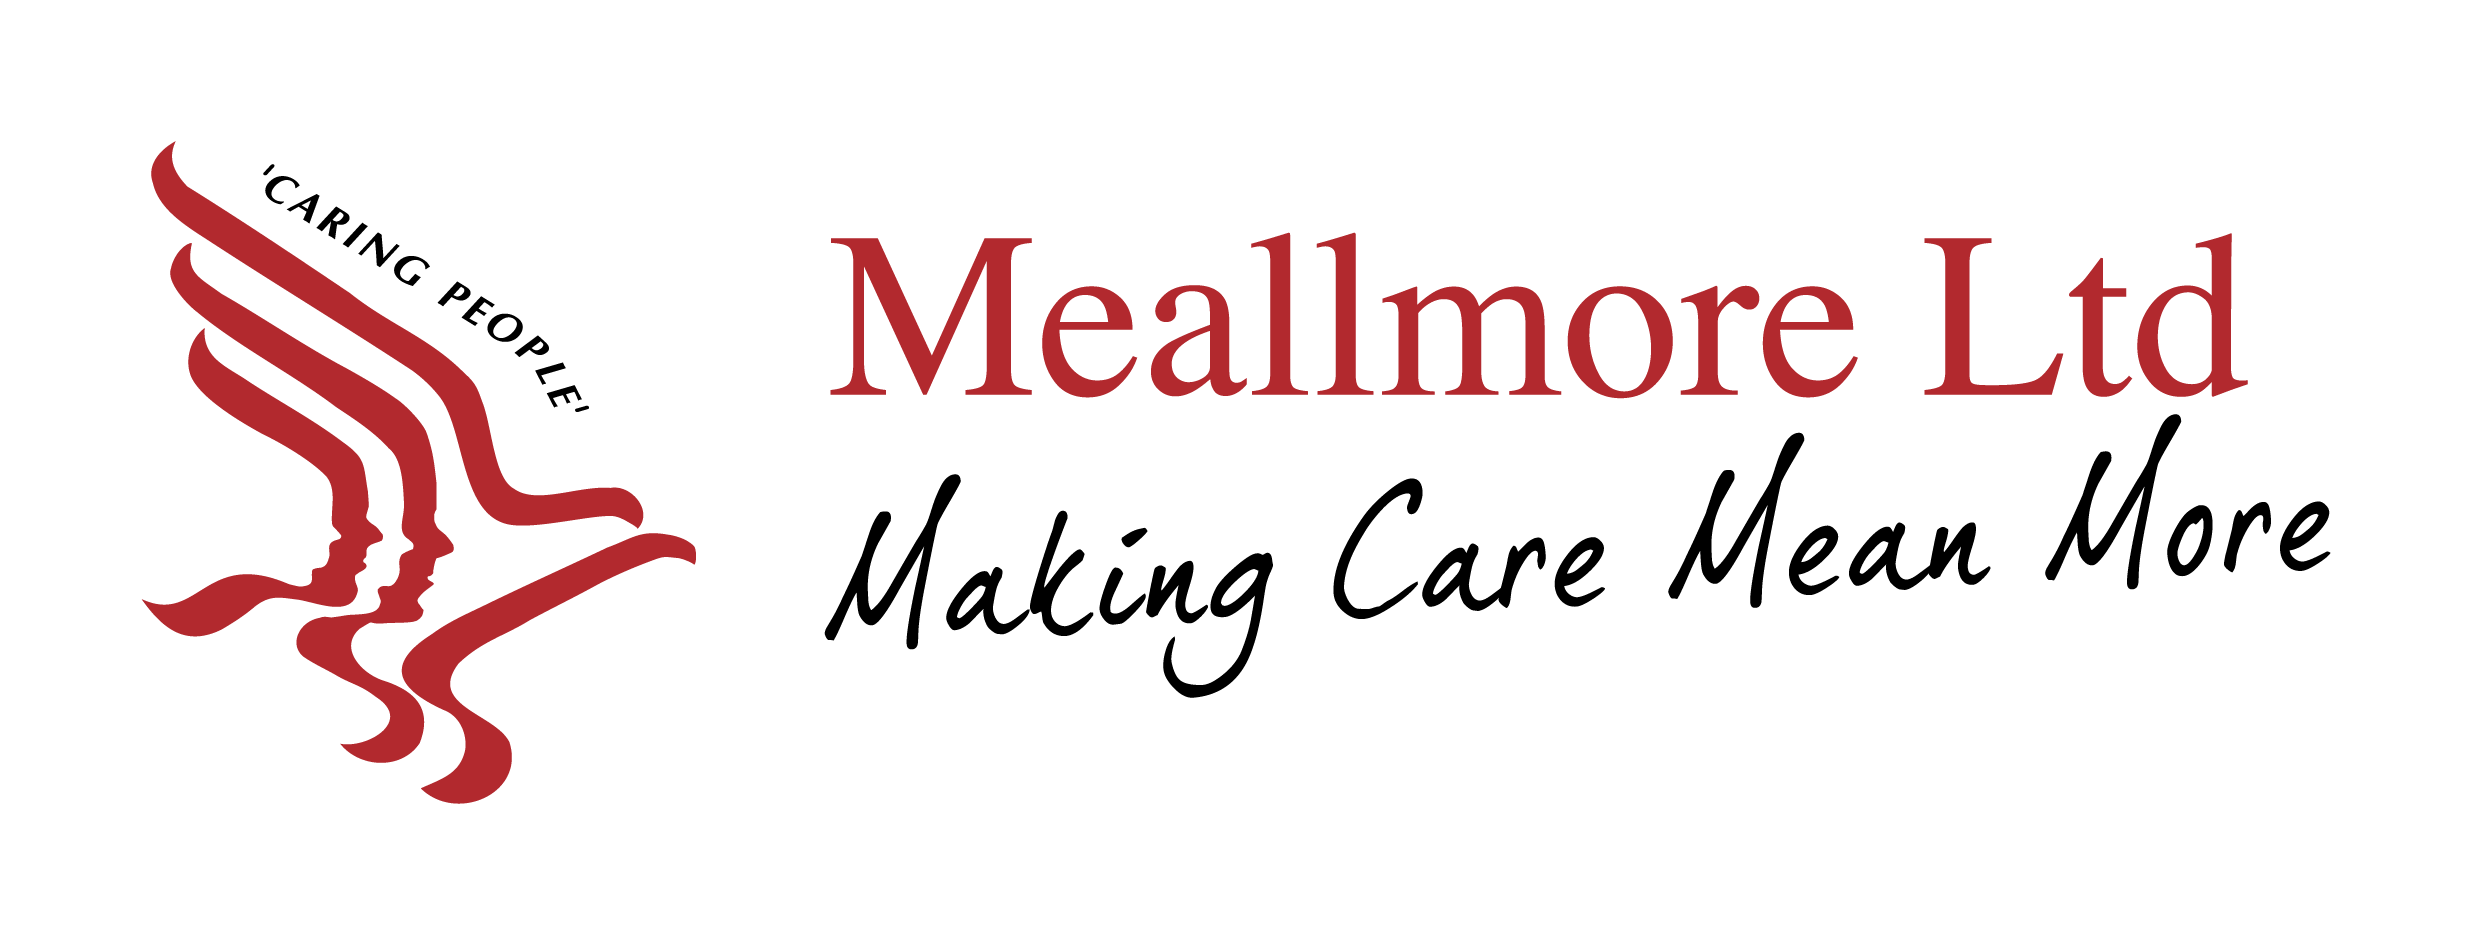 Meallmore